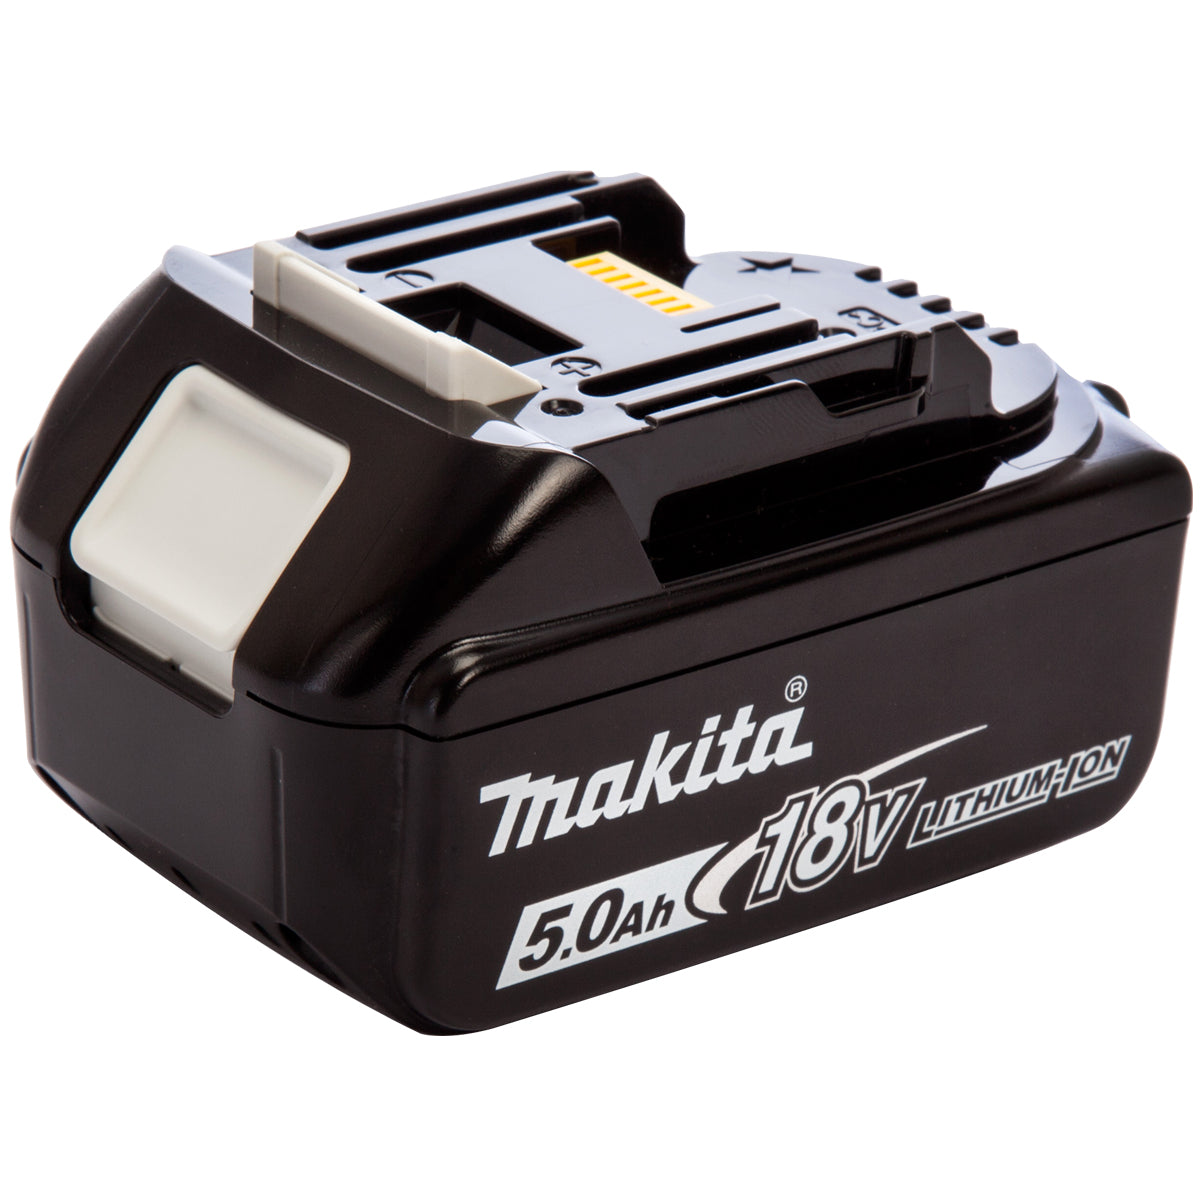 Makita 18V LXT 11 Piece Power Tool Kit with 4 x 5.0Ah Batteries T4TKIT-750